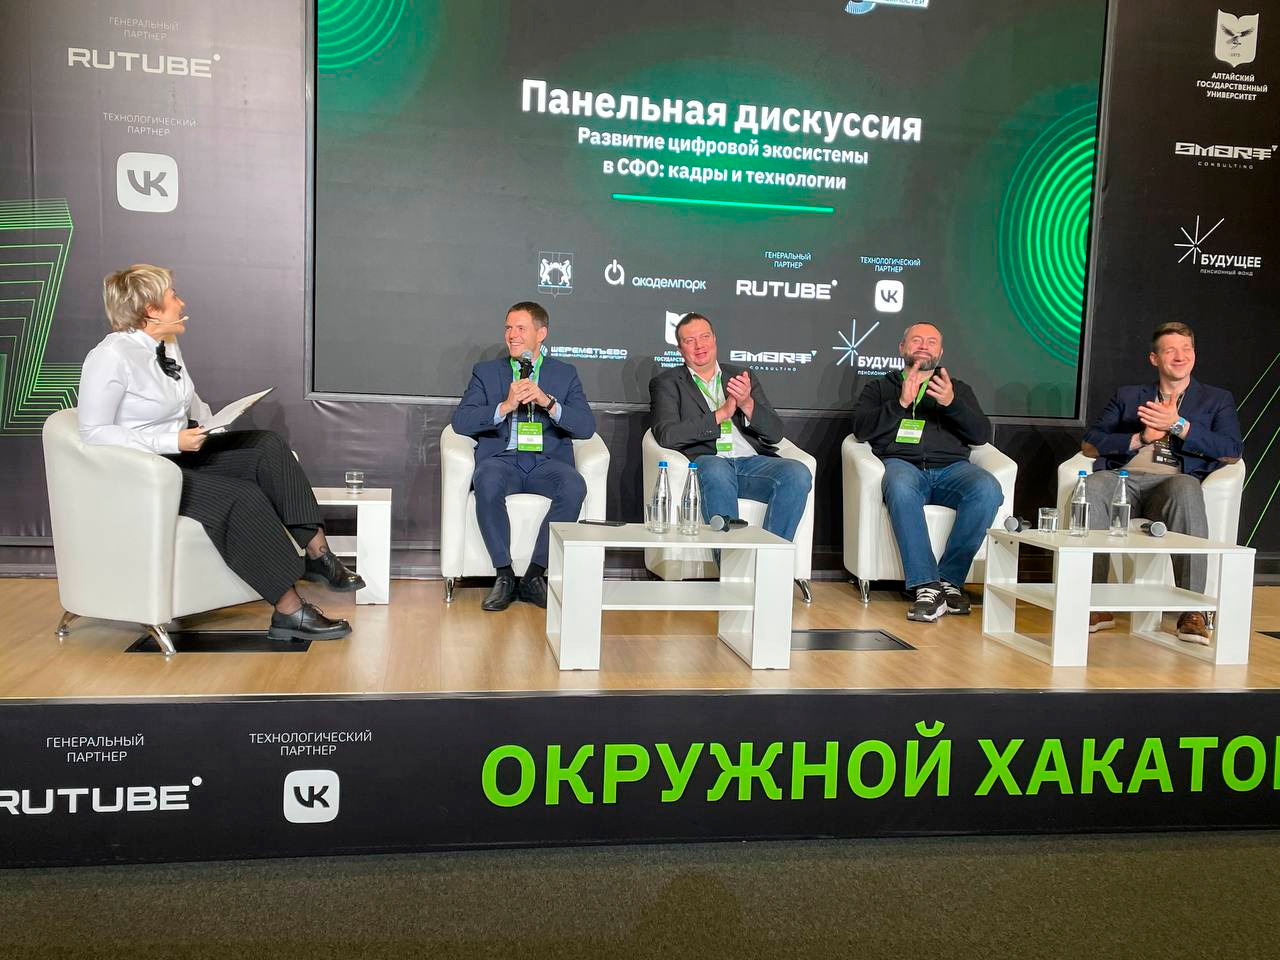 Окружной хакатон по ИИ с призовым фондом 3 млн руб стартовал в Новосибирске